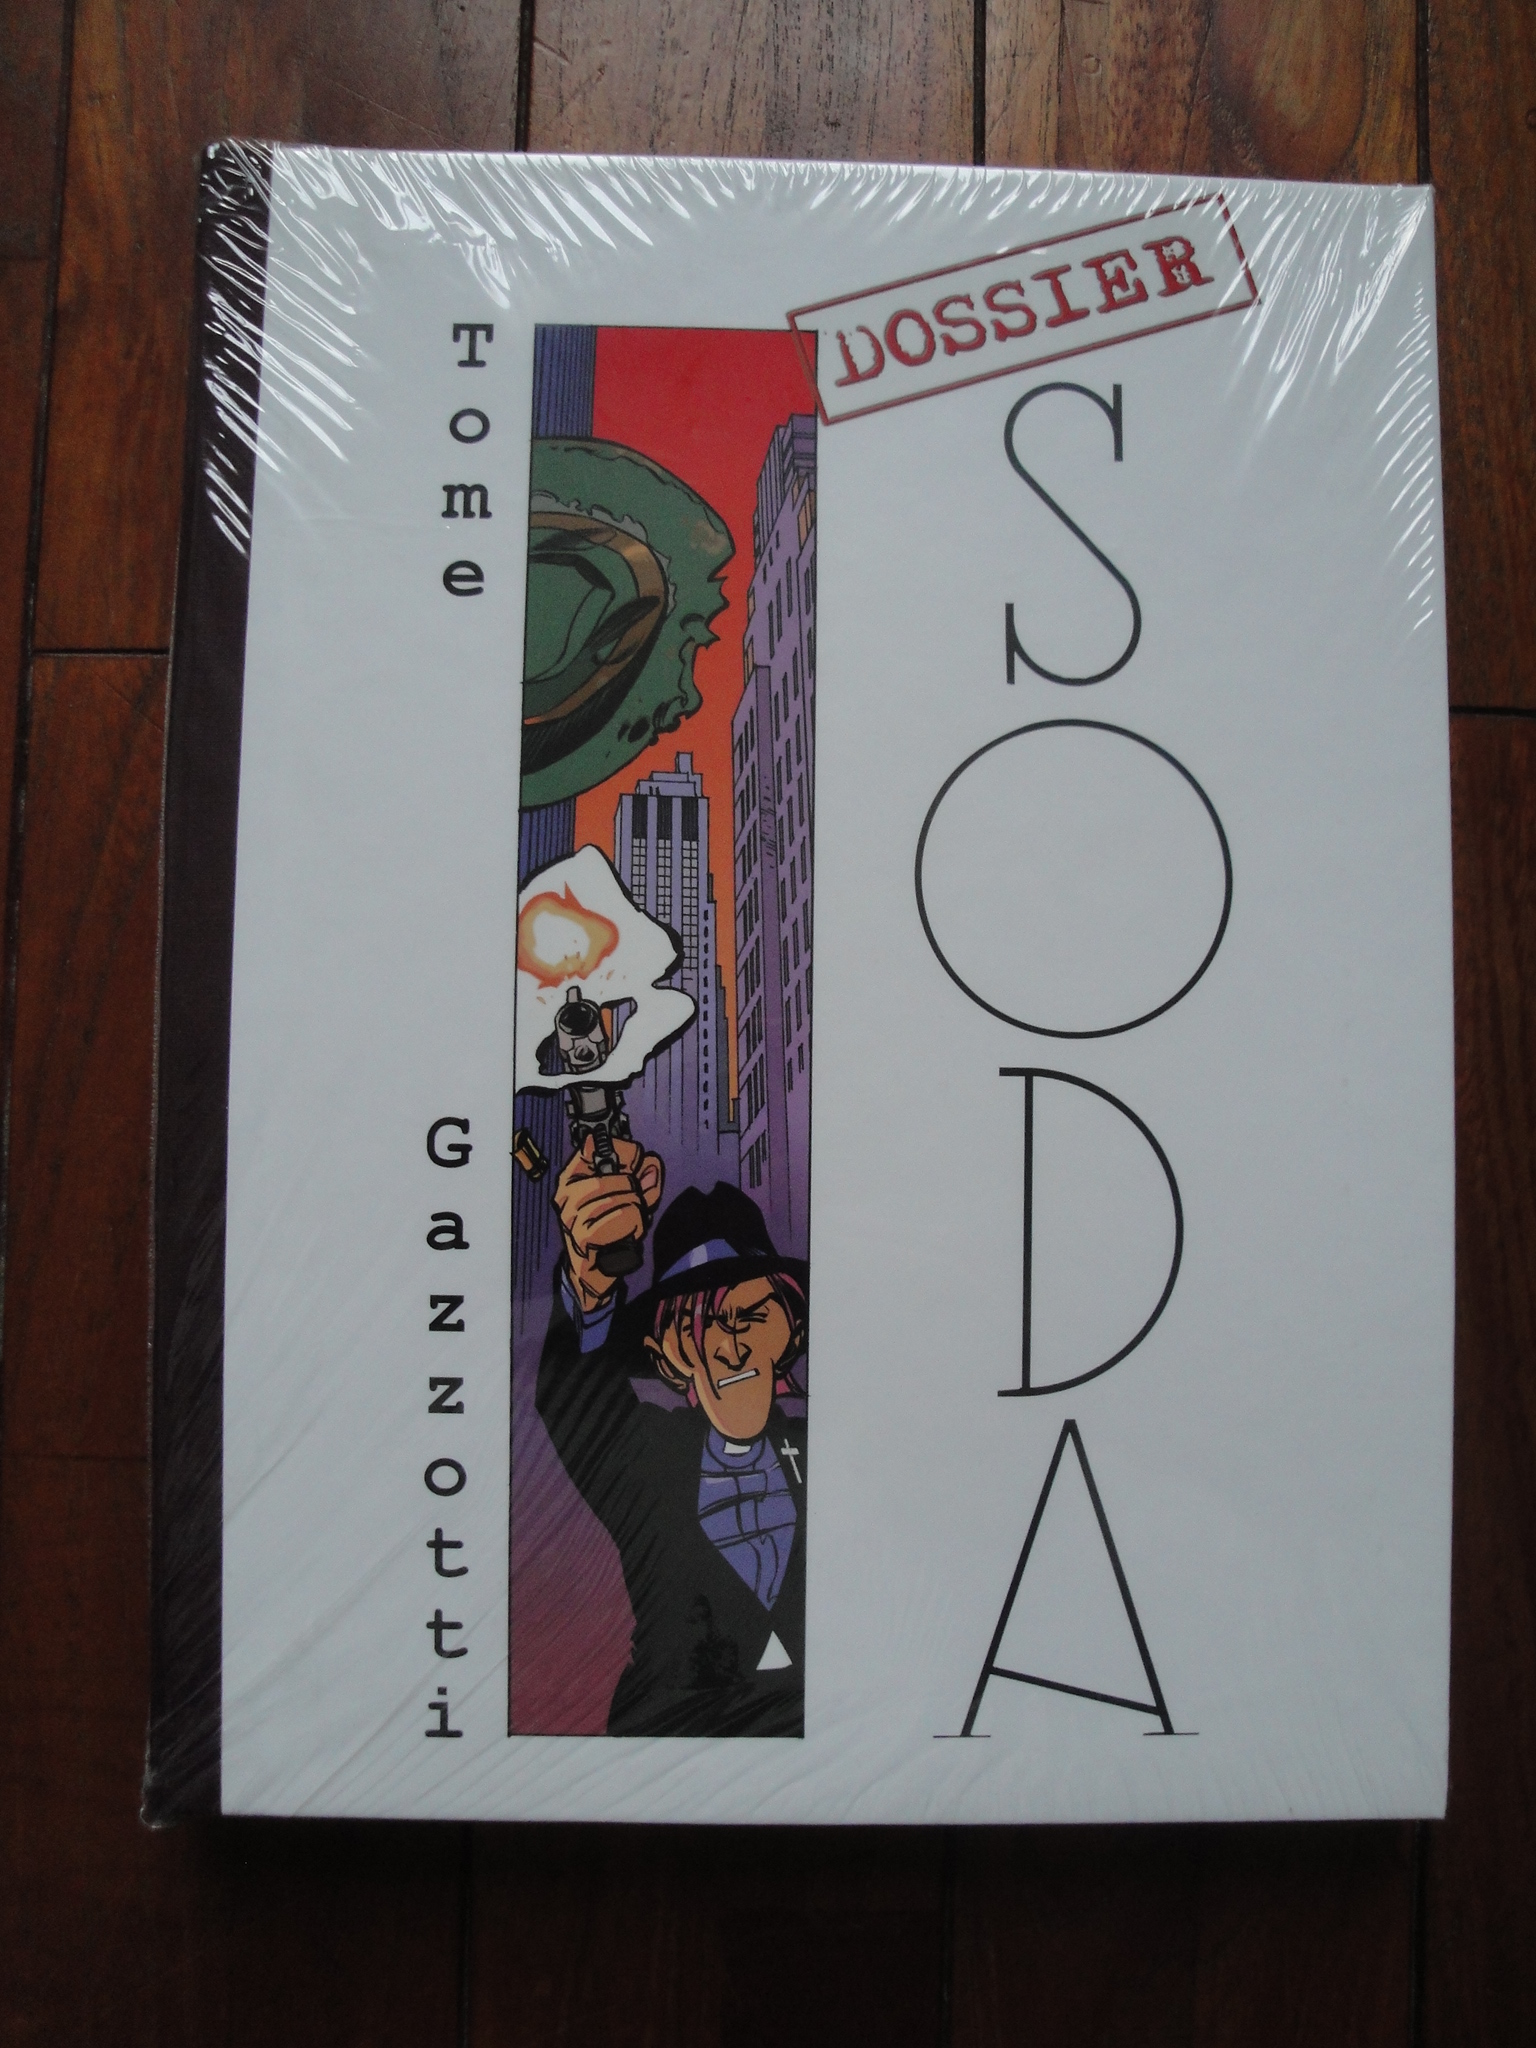 Gazzotti Tome Dossier Soda 450 exemplaires (2002)